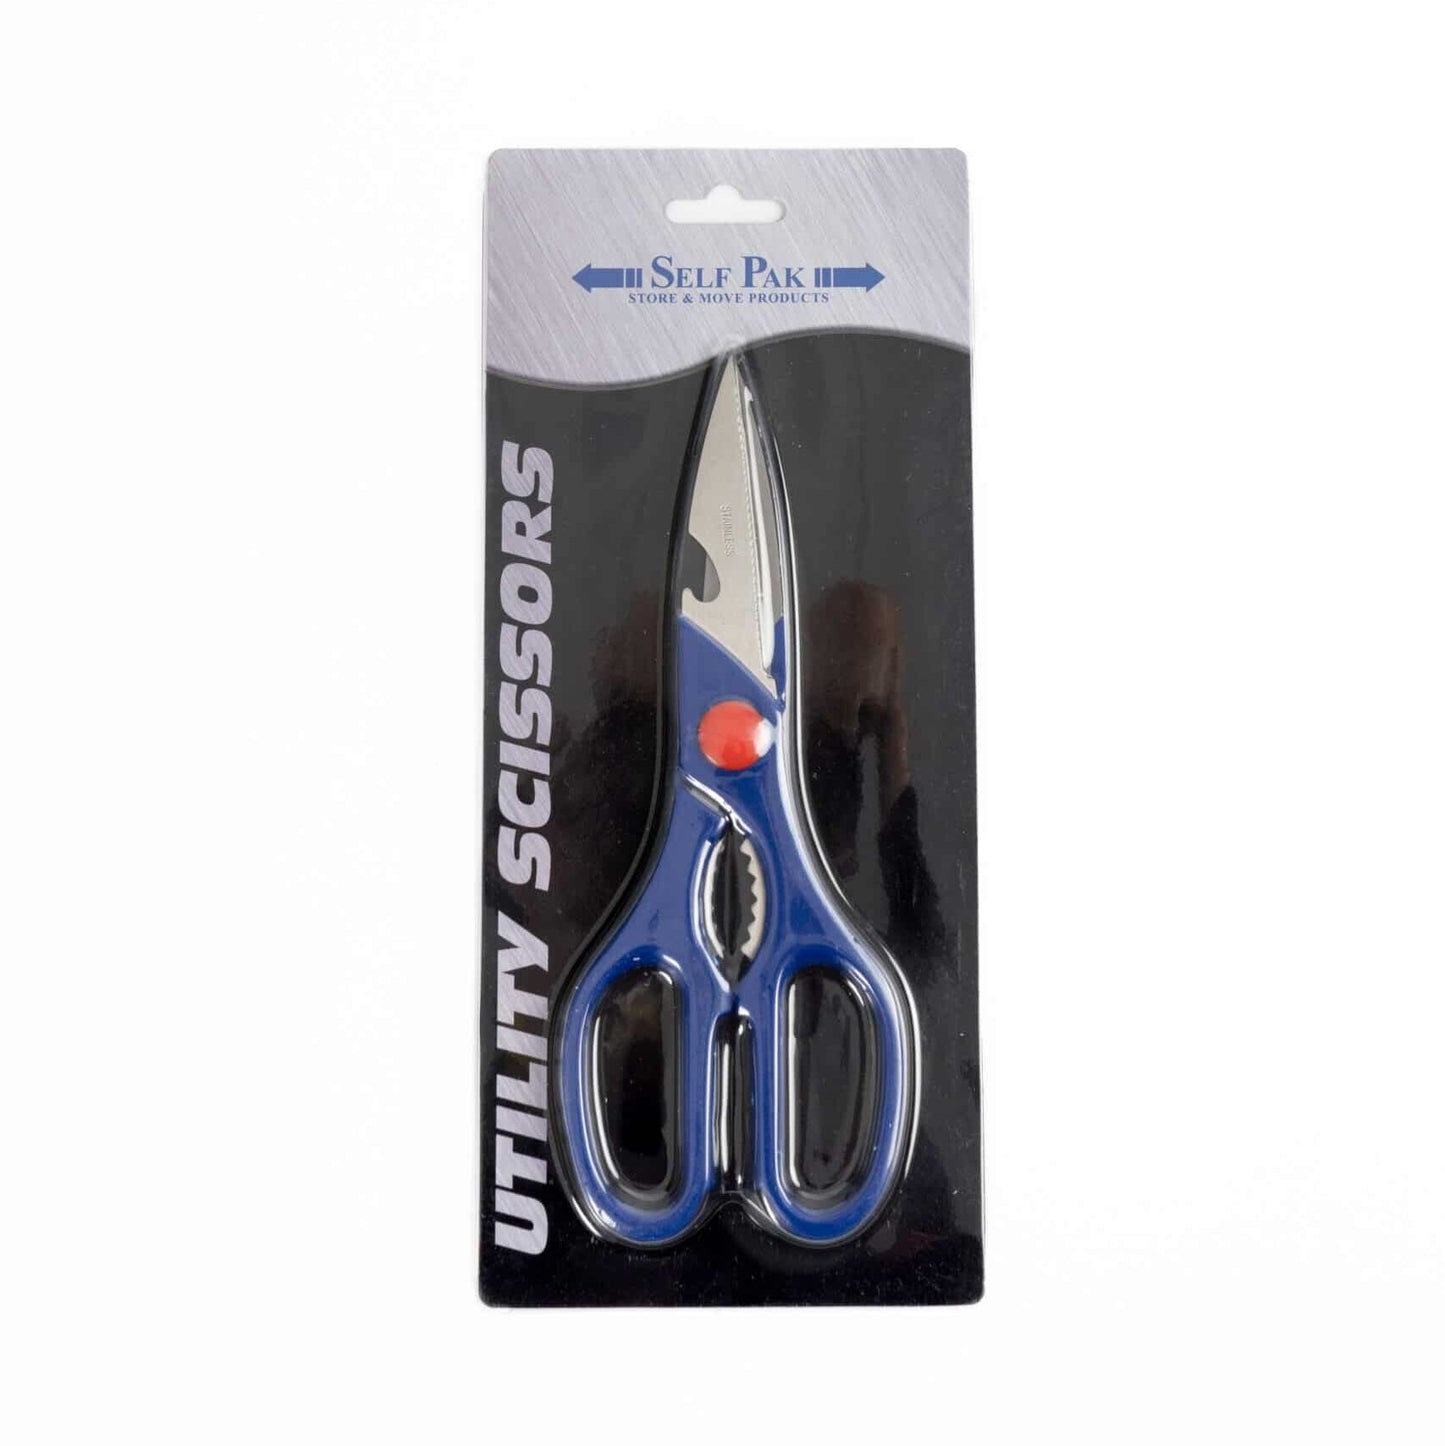 Utility Scissors